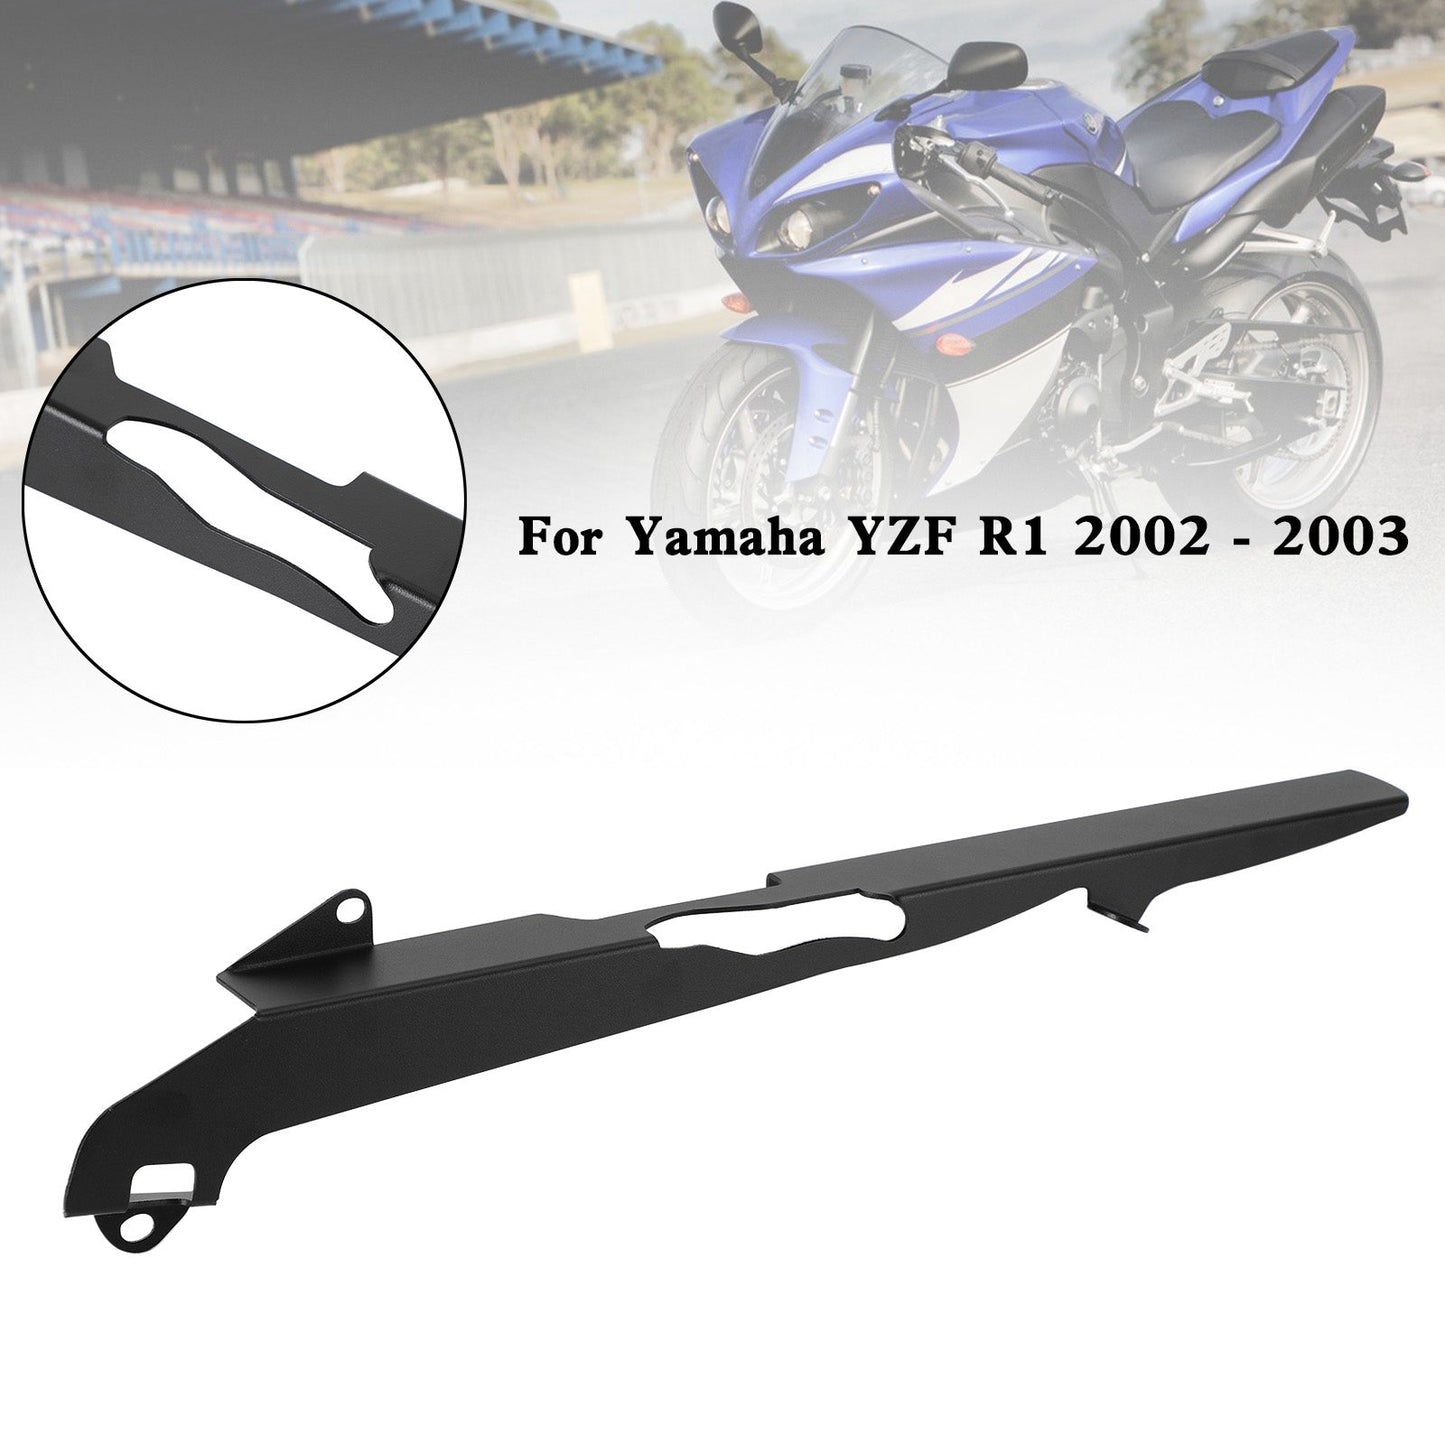 Cache de protection carter pignon Yamaha YZF R1 2002 2003